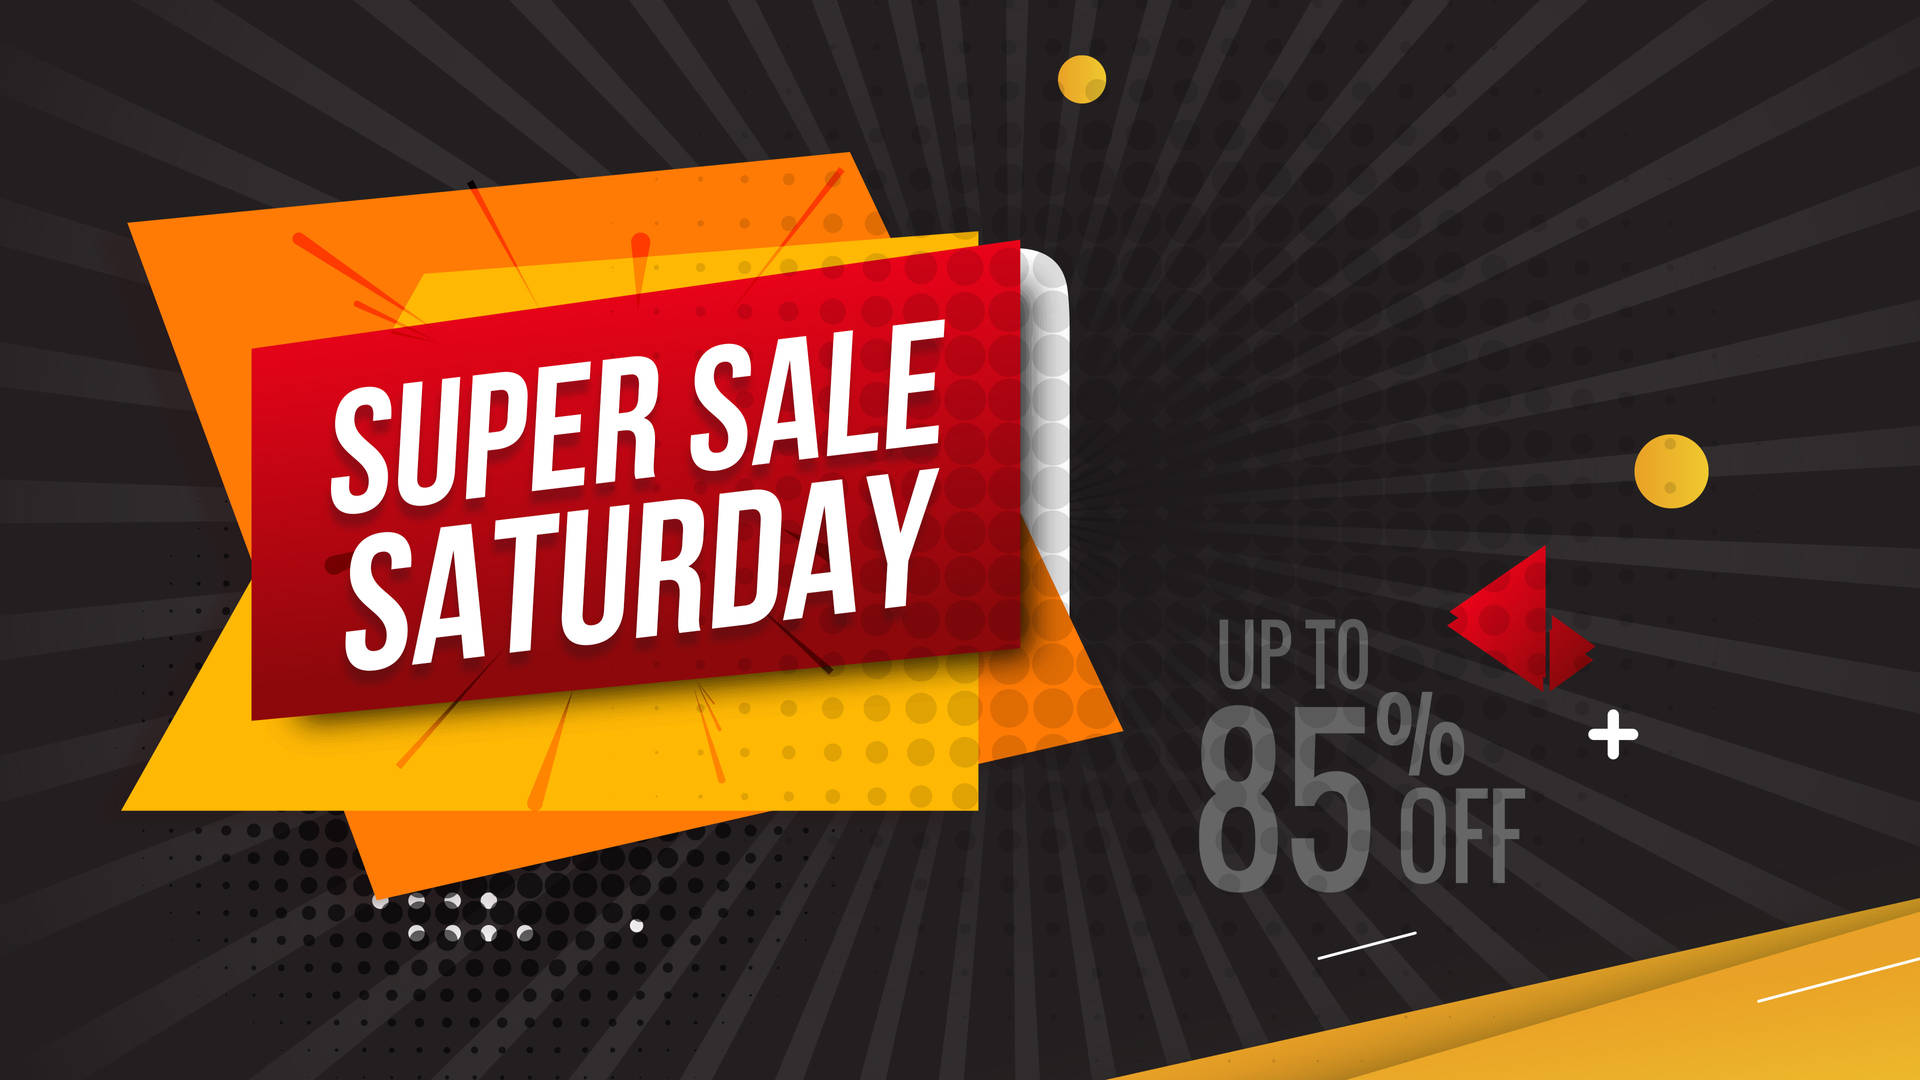 Caption: Amazing Super Saturday Sale